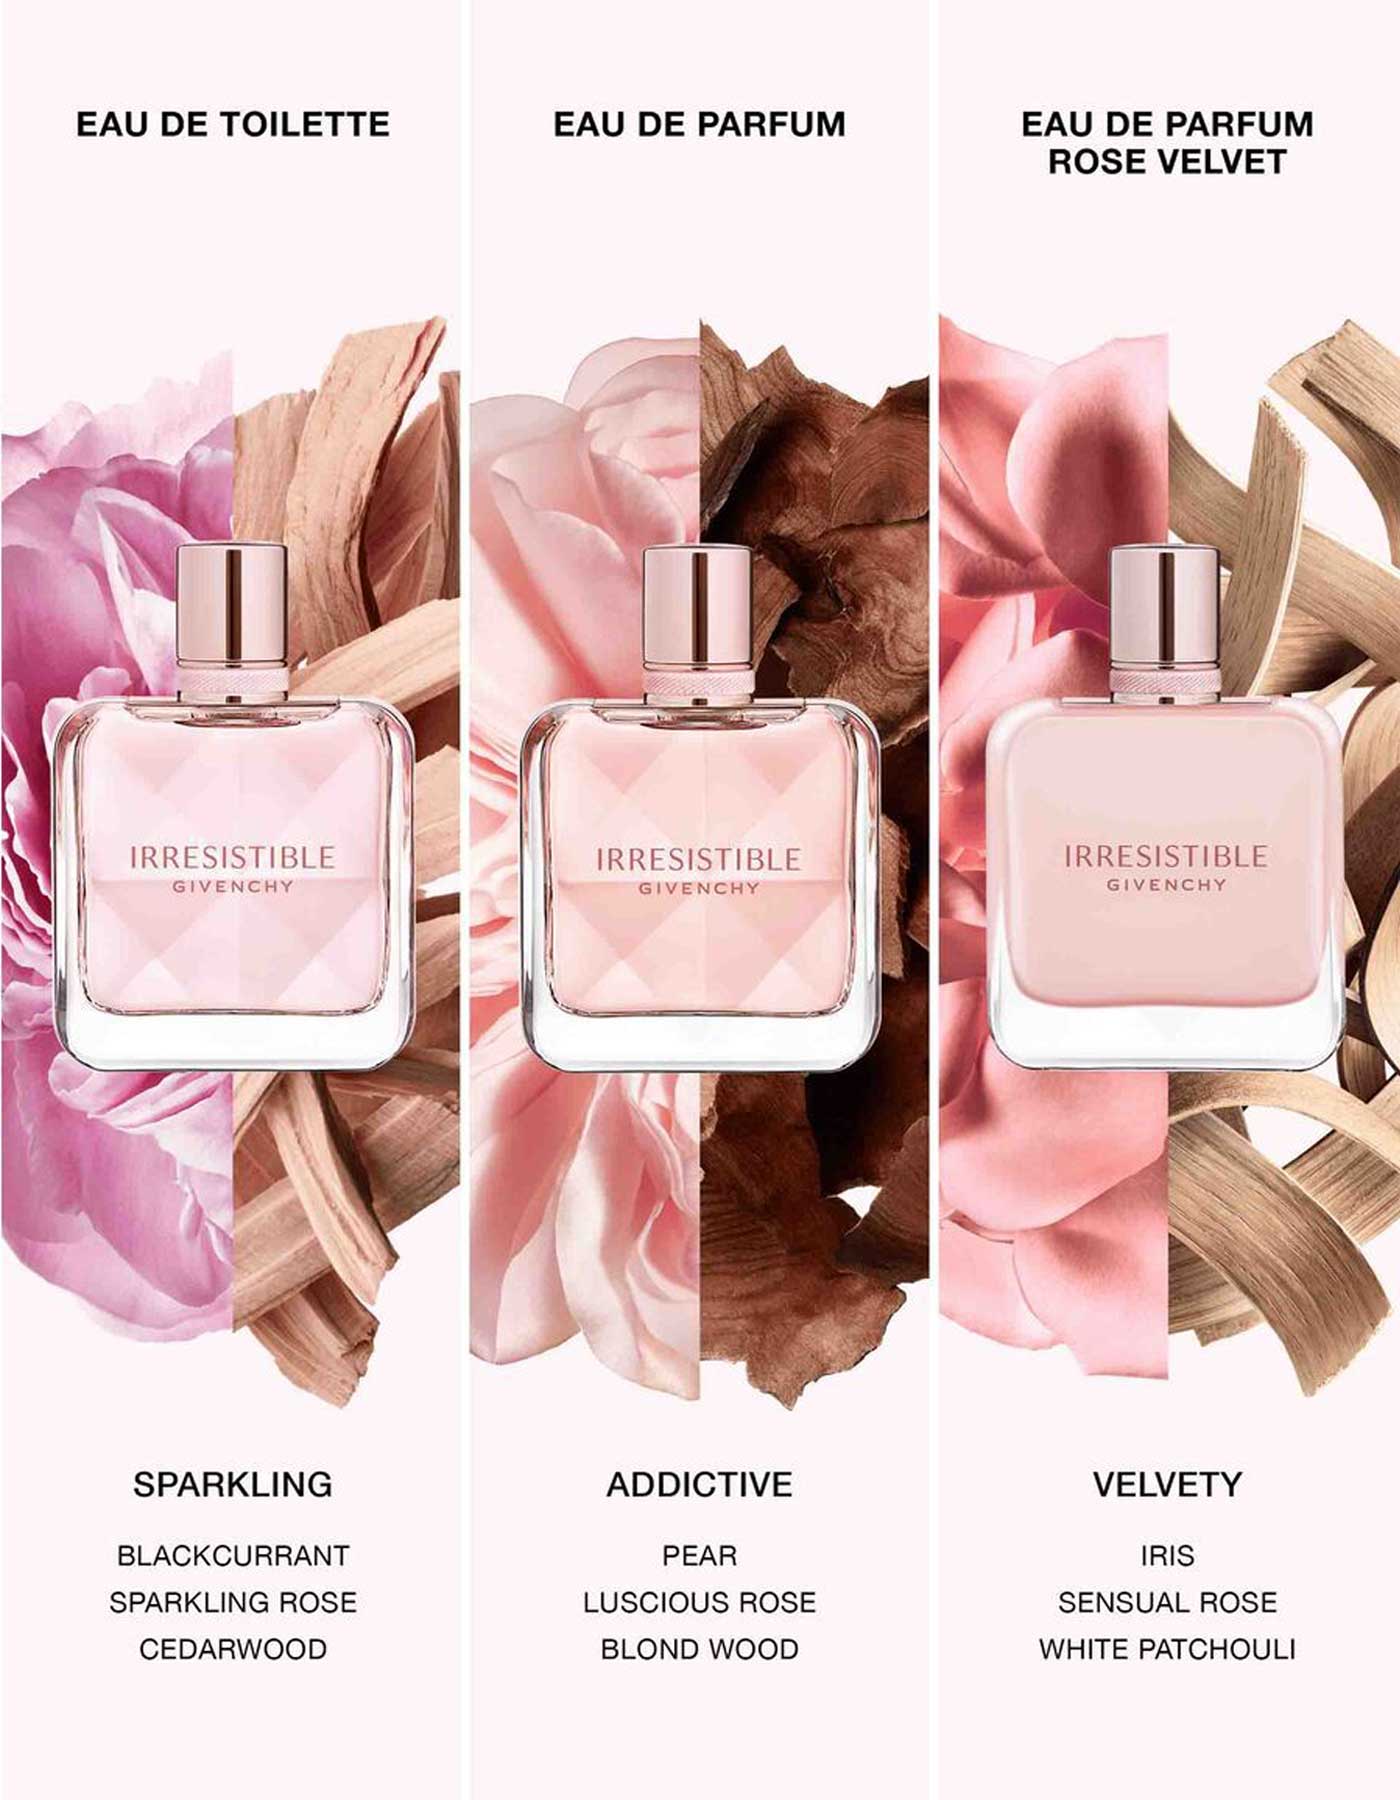 Irresistible Rose Velvet Eau de Parfum - Givenchy